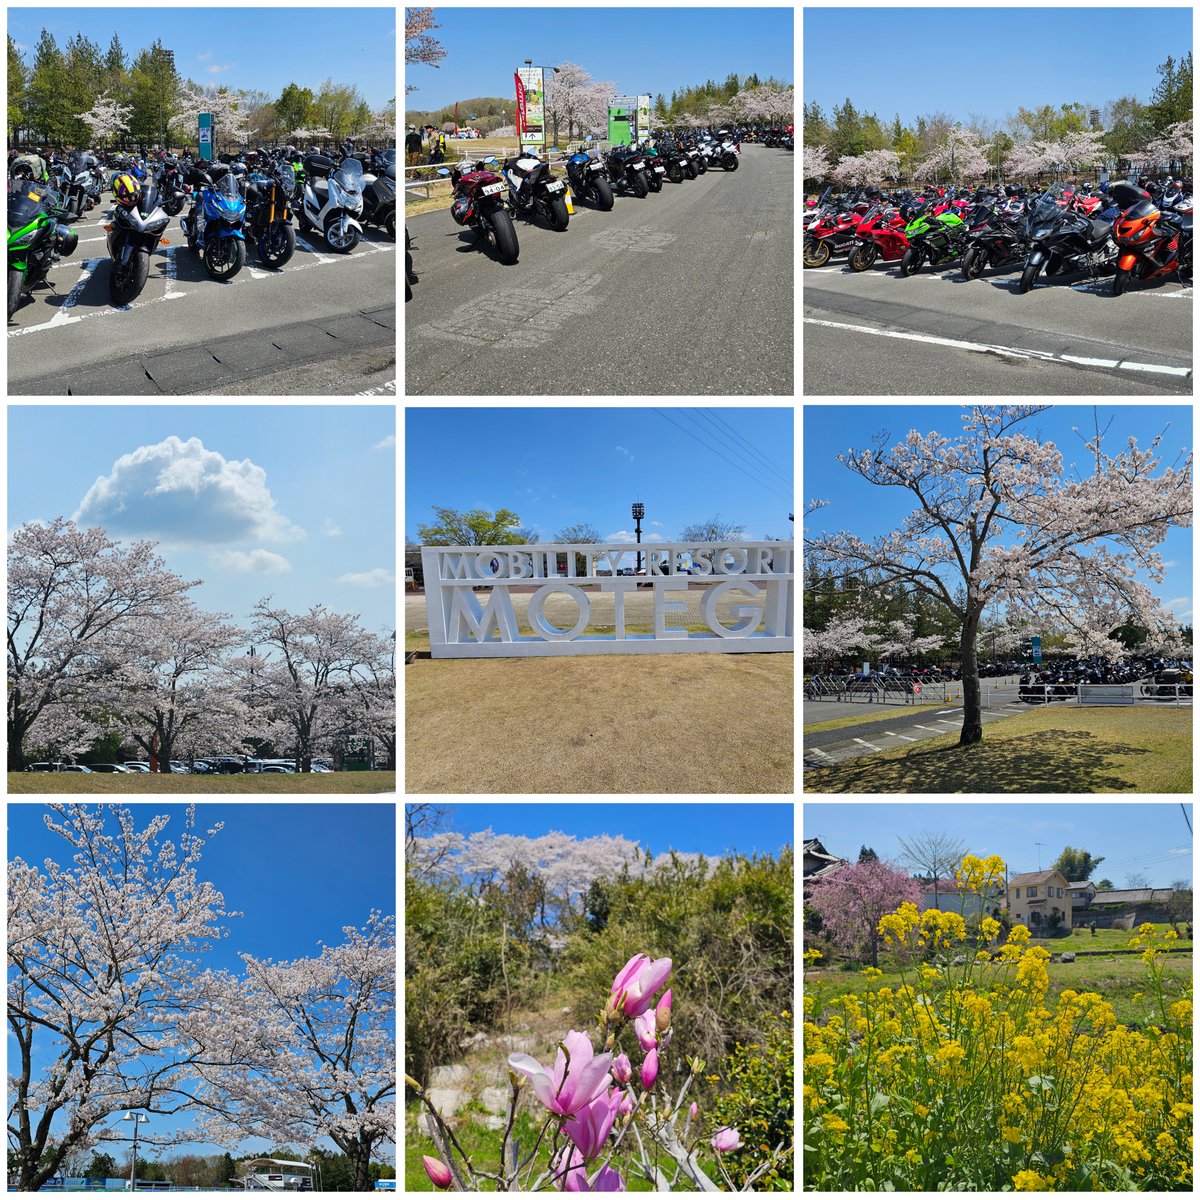 20240413(土)－14(日)
全日本ロードレース選手権　第2戦　スーパーバイクレースinもてぎを見に行って来ました😀
2日間ともよく晴れてレース日和でした
モビリティリゾートもてぎはこの時期は桜🌸も咲いててとても綺麗ですね🌸

レースはJSB1000のYAMAHA　FACTORY　RACING…